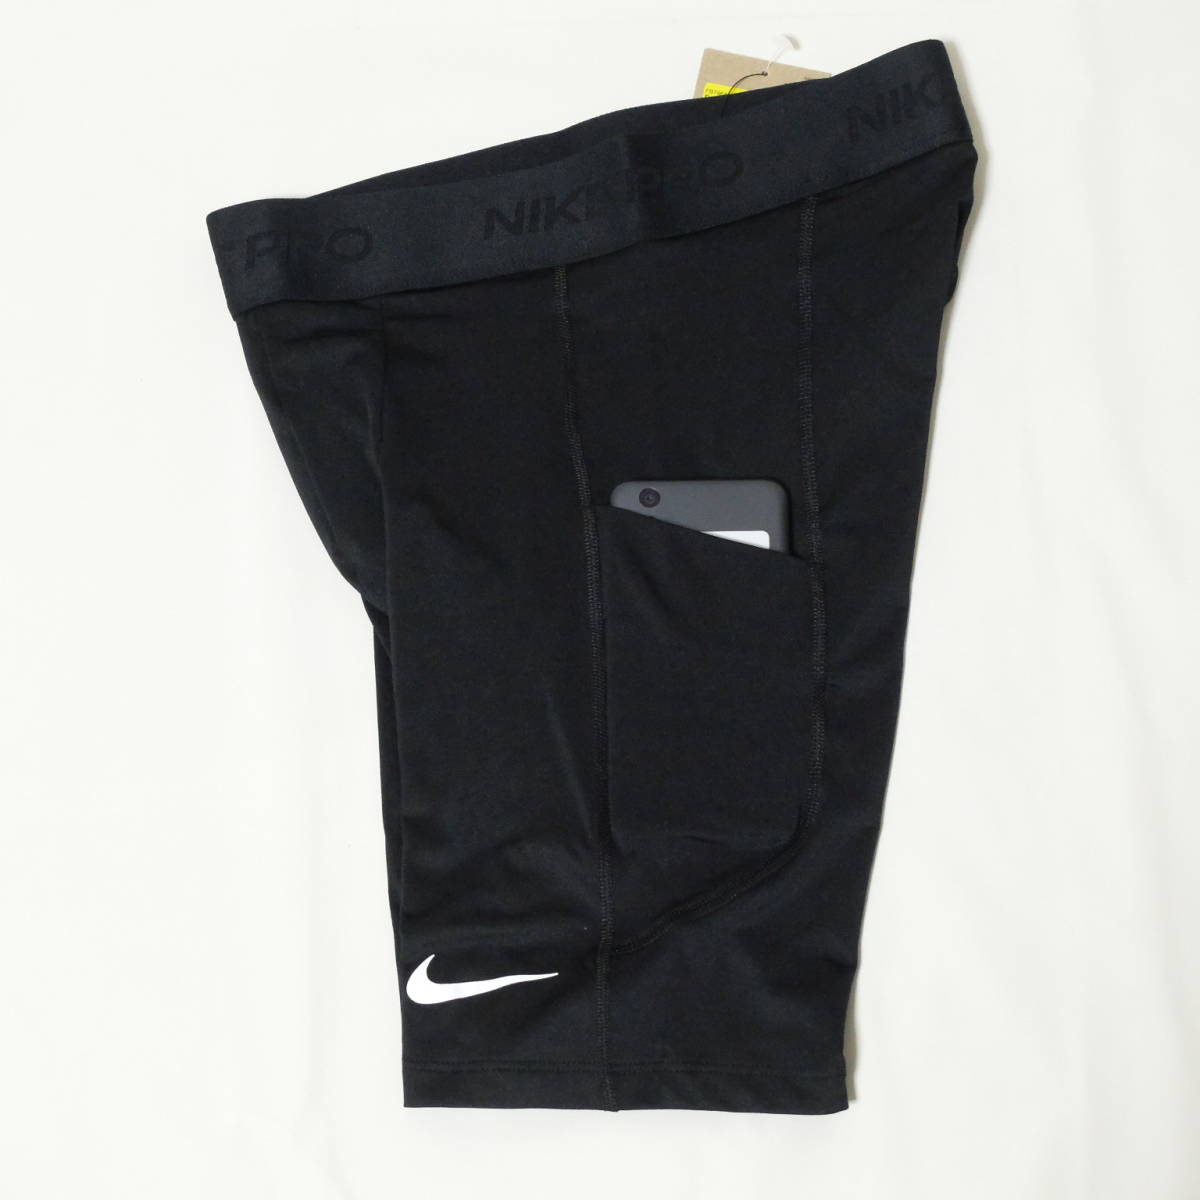 [新品 送料込] メンズ Sサイズ ナイキ Dri-FIT フィットネス ロングショートパンツ FB7964-010 Nike Pro Dri-FIT Men's 9' Shorts